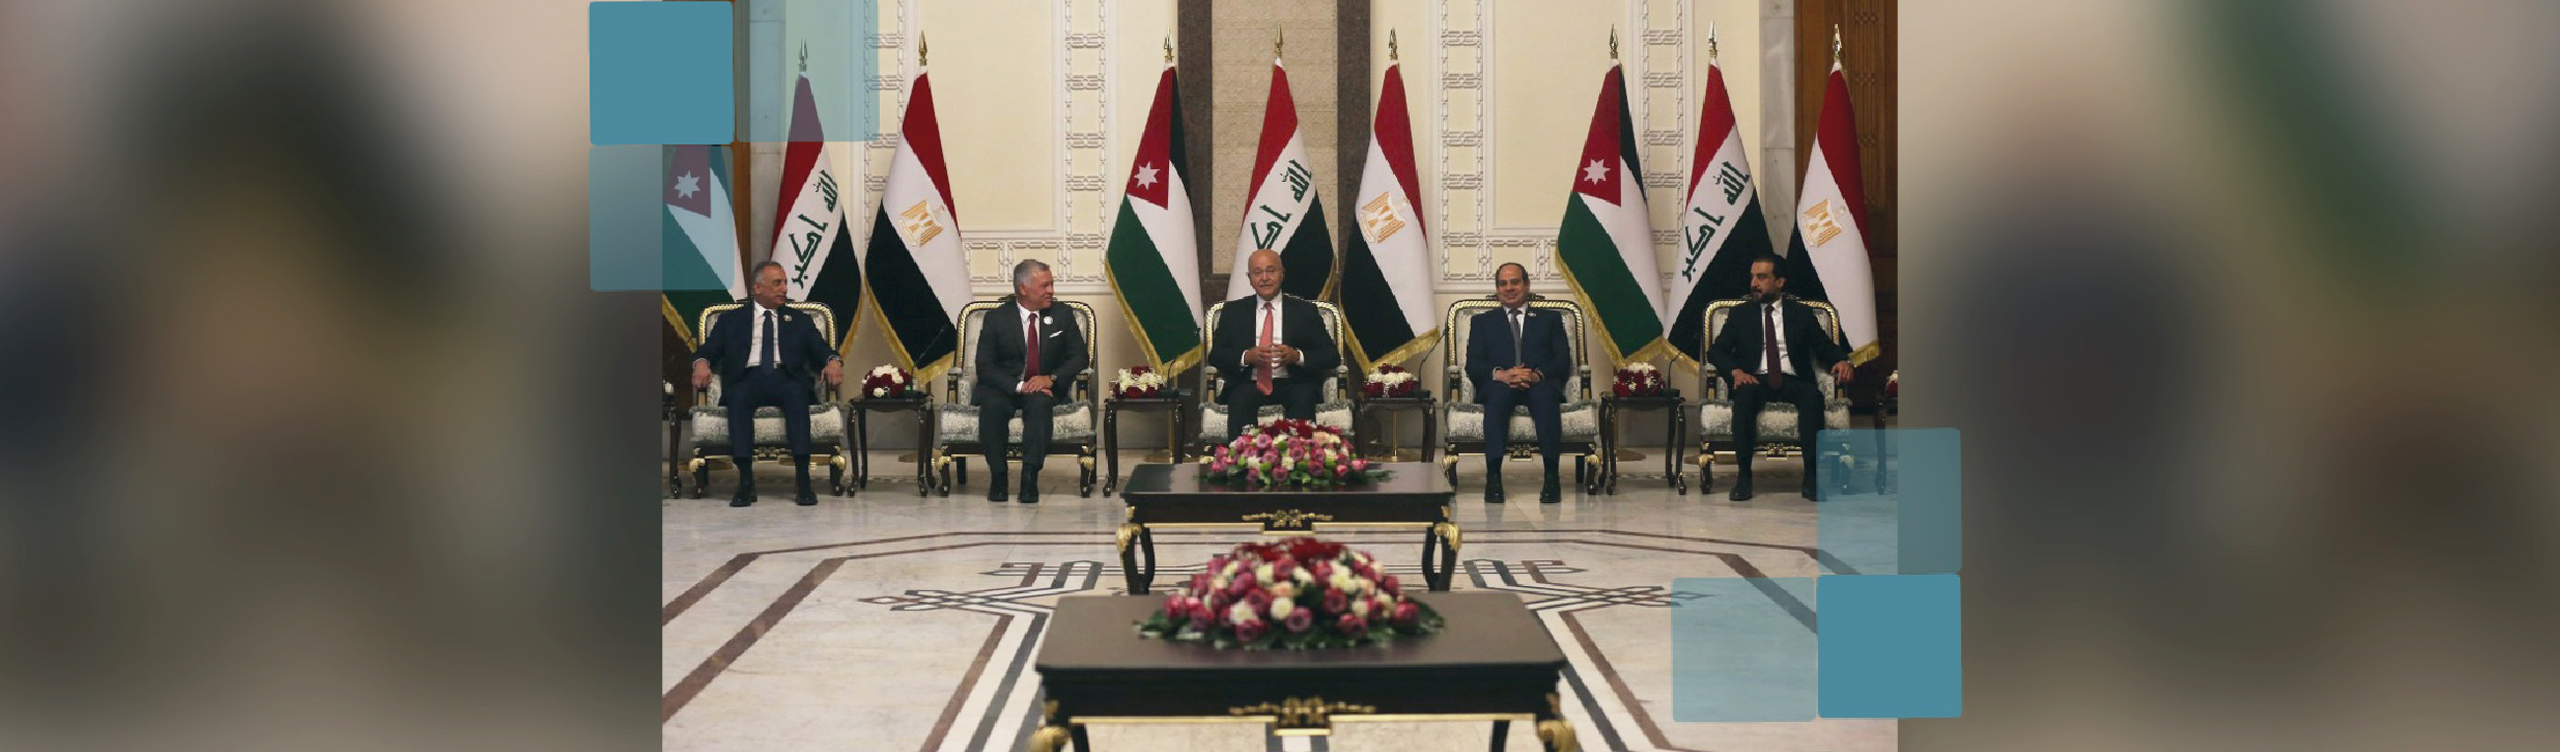 العراق والمحيط الإقليمي ضرورة التقارب والاندماج